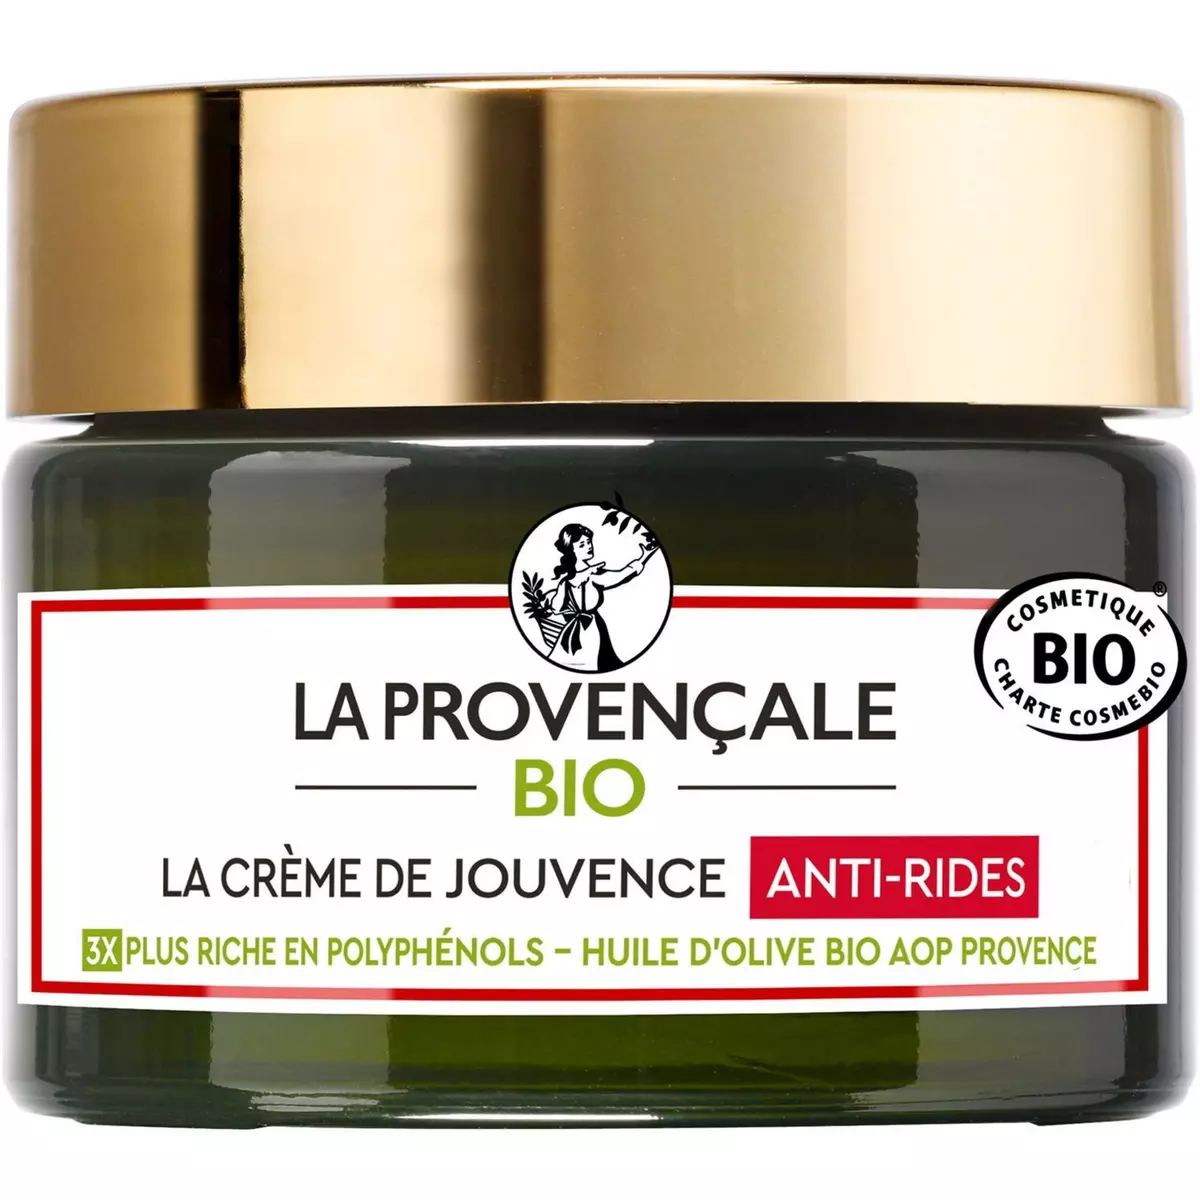 LA PROVENCALE BIO Crème de jouvence anti-rides à l'huile d'olive bio 50ml